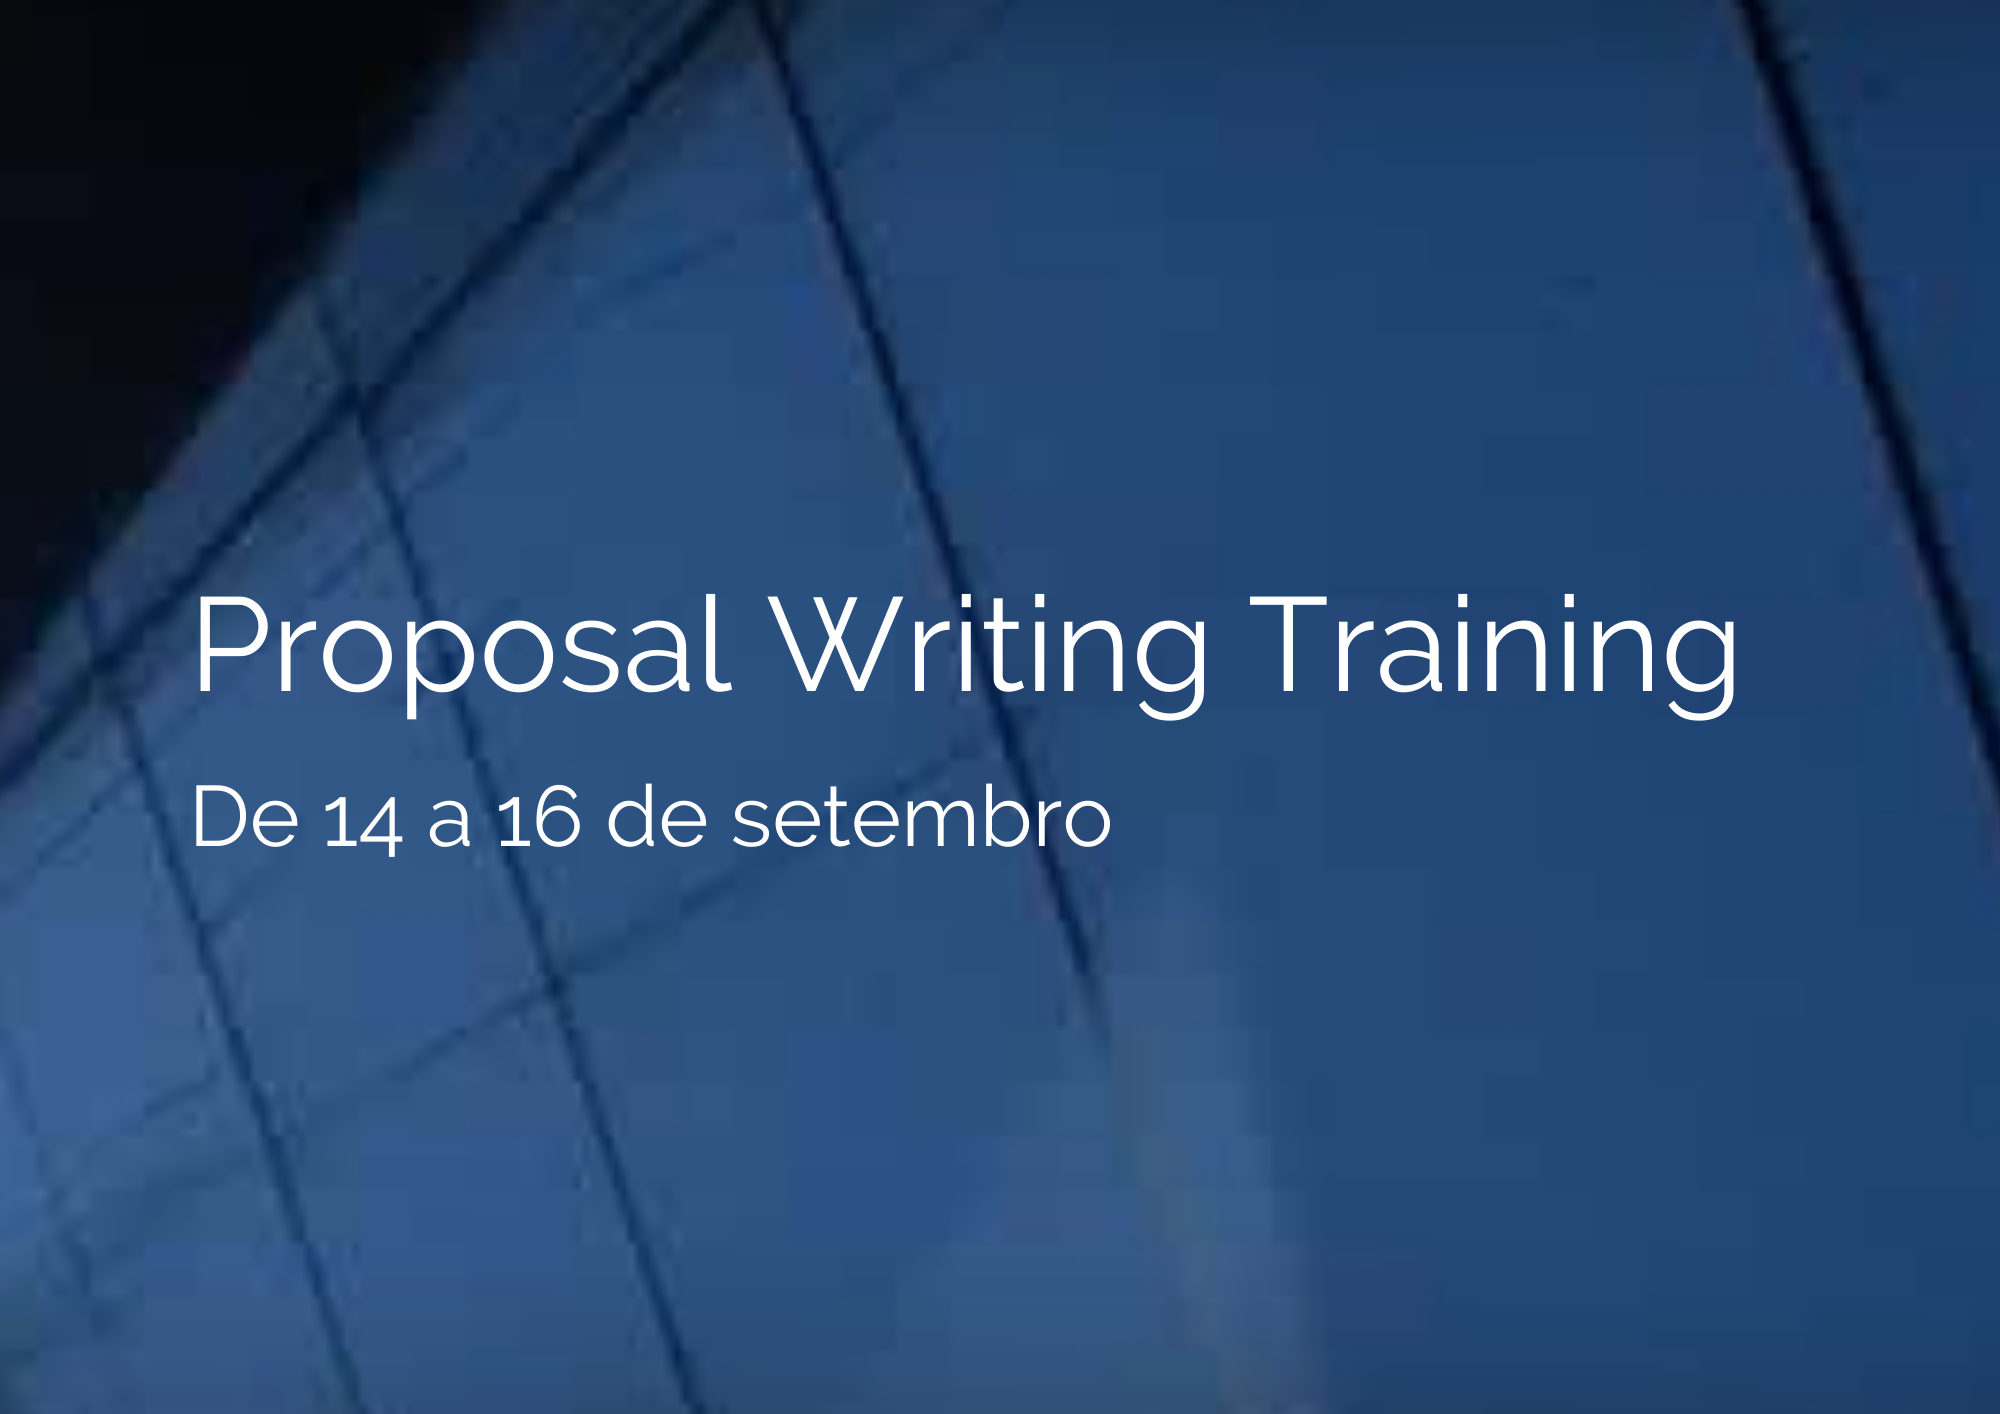 Inscrições para a formação Proposal Writing Training, formação com o titulo 